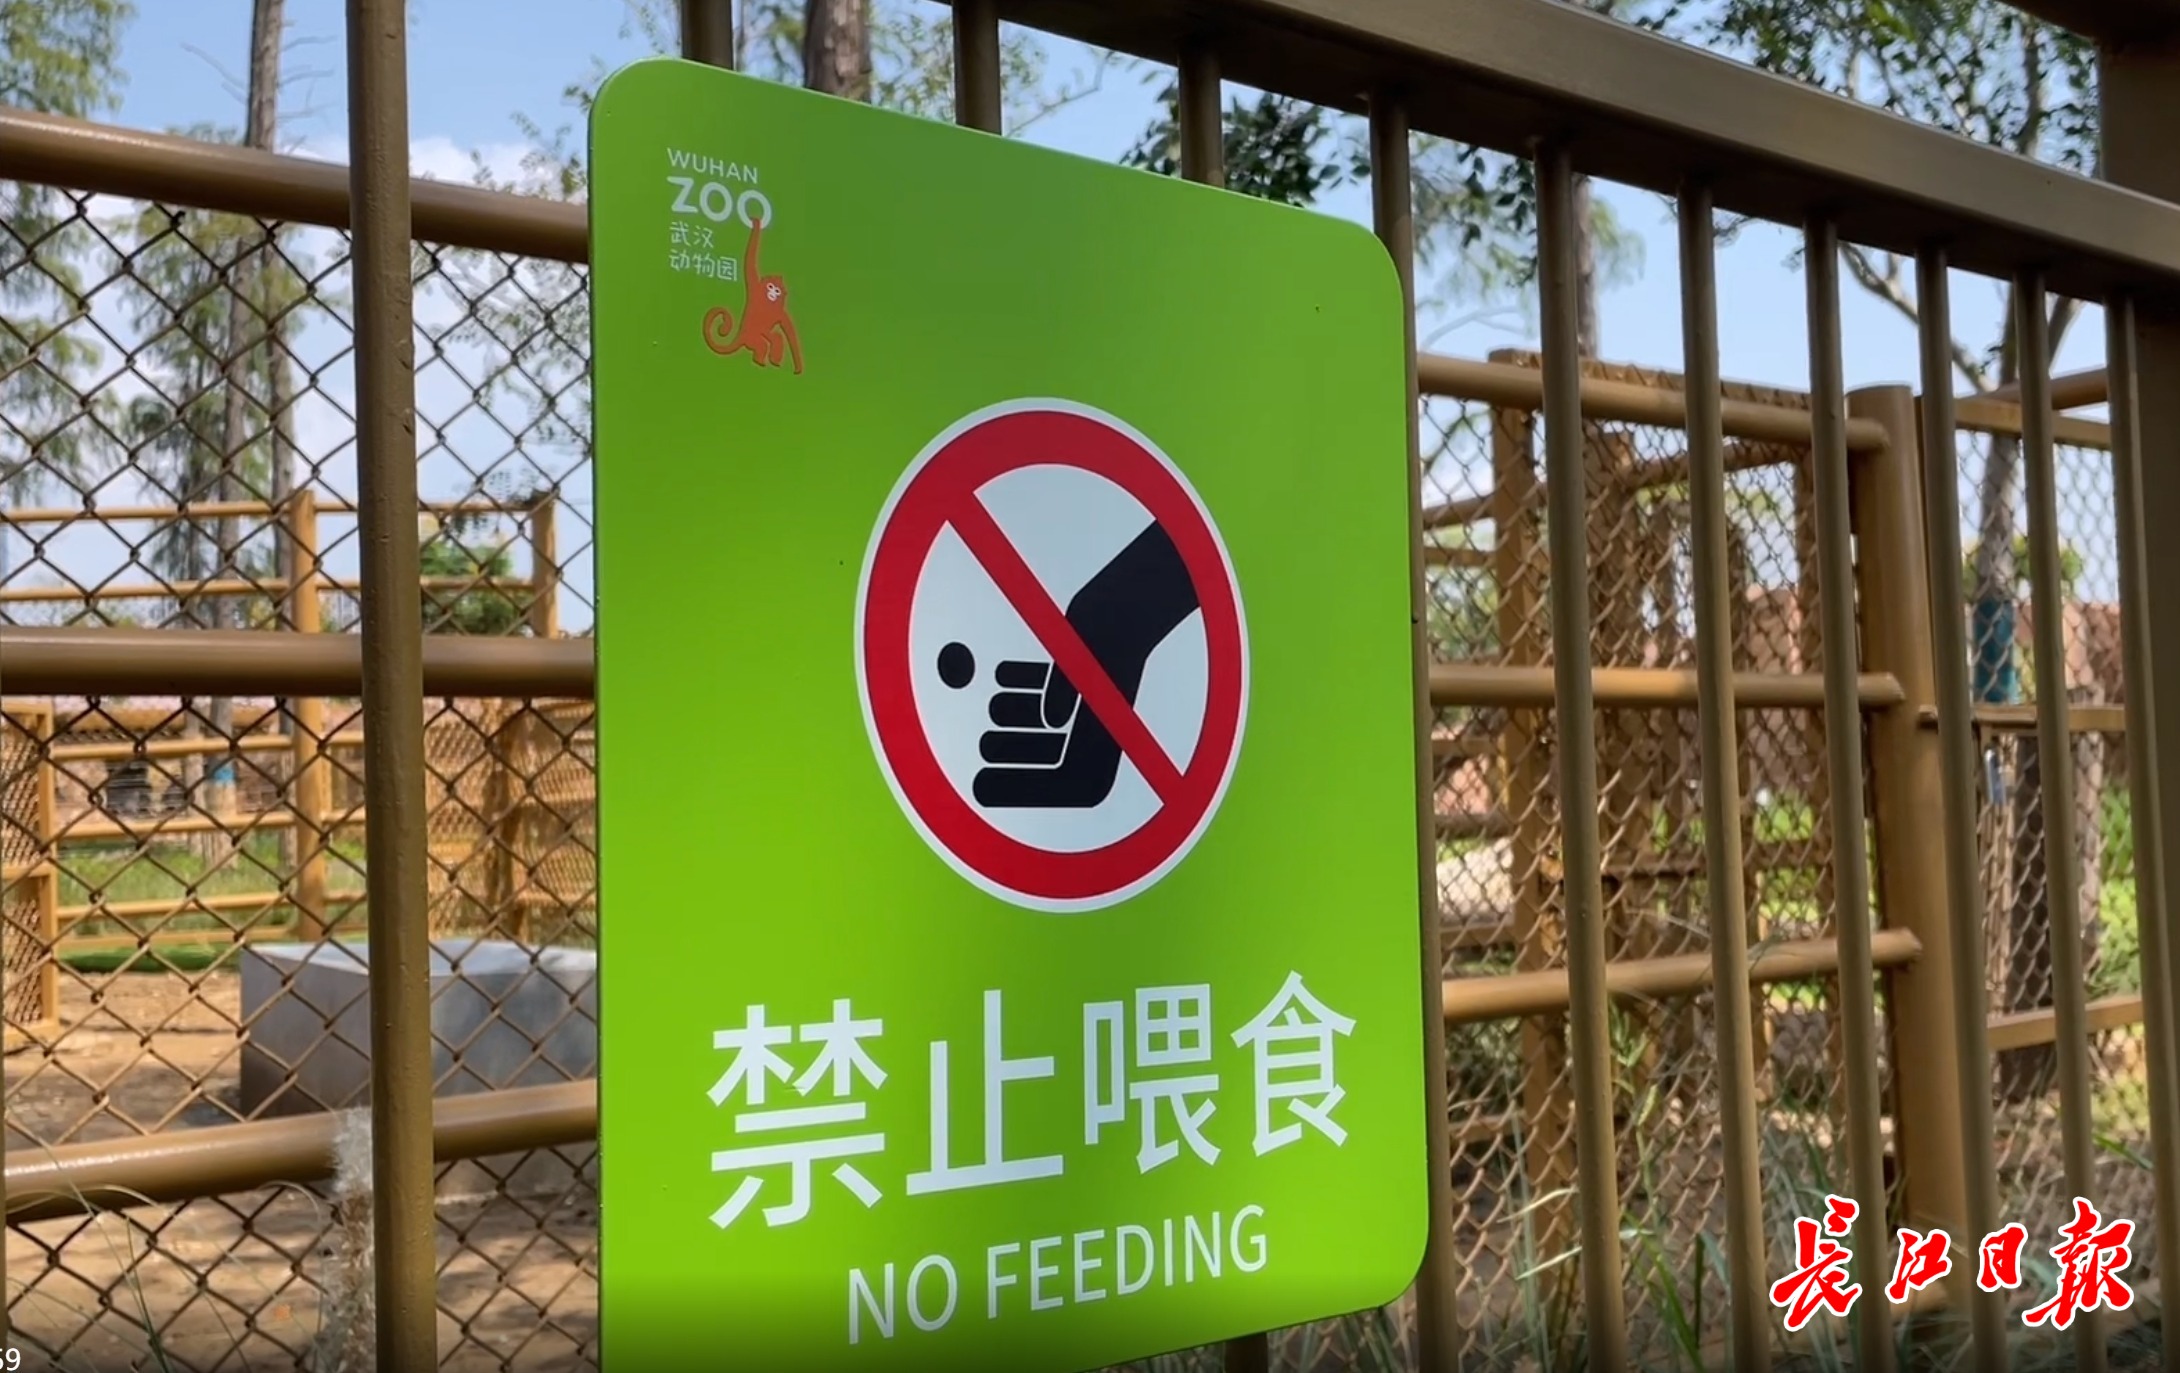 禁止喂食标识牌武汉动物园相关负责人表示,希望大家关注场馆内的